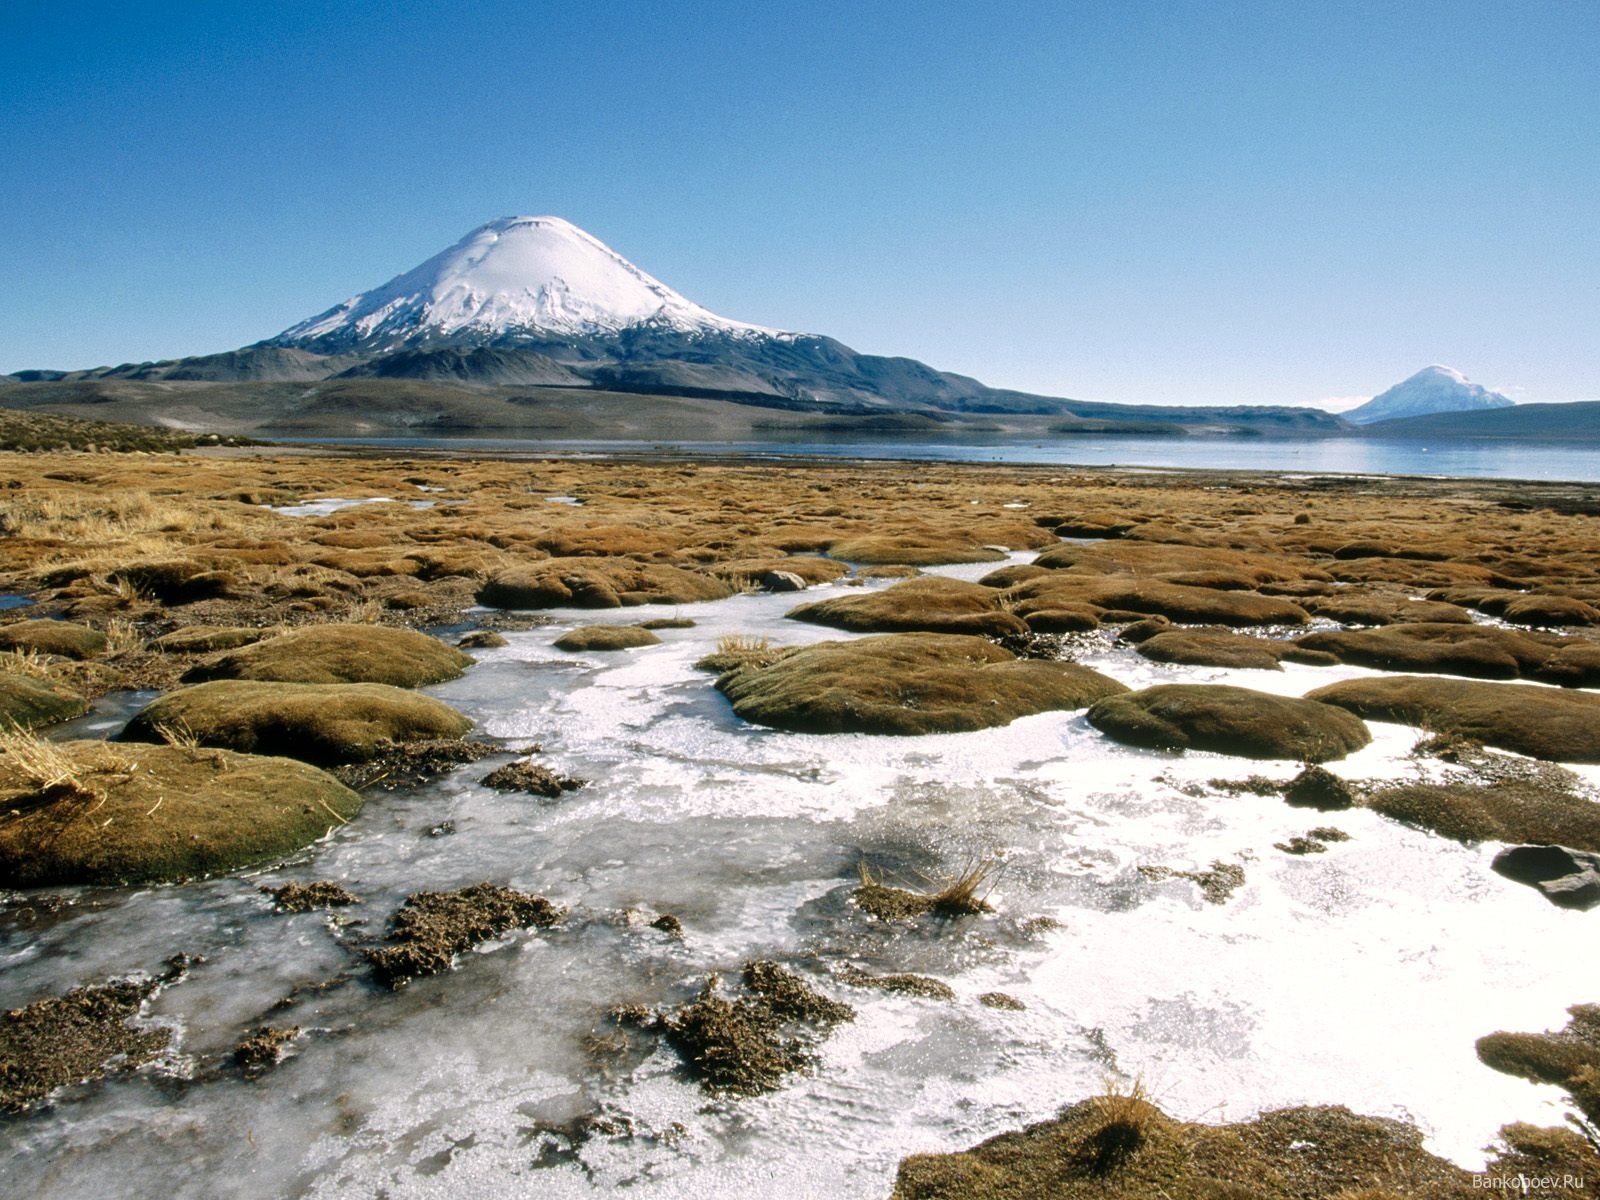 Lago Chungará Altiplano de Chile